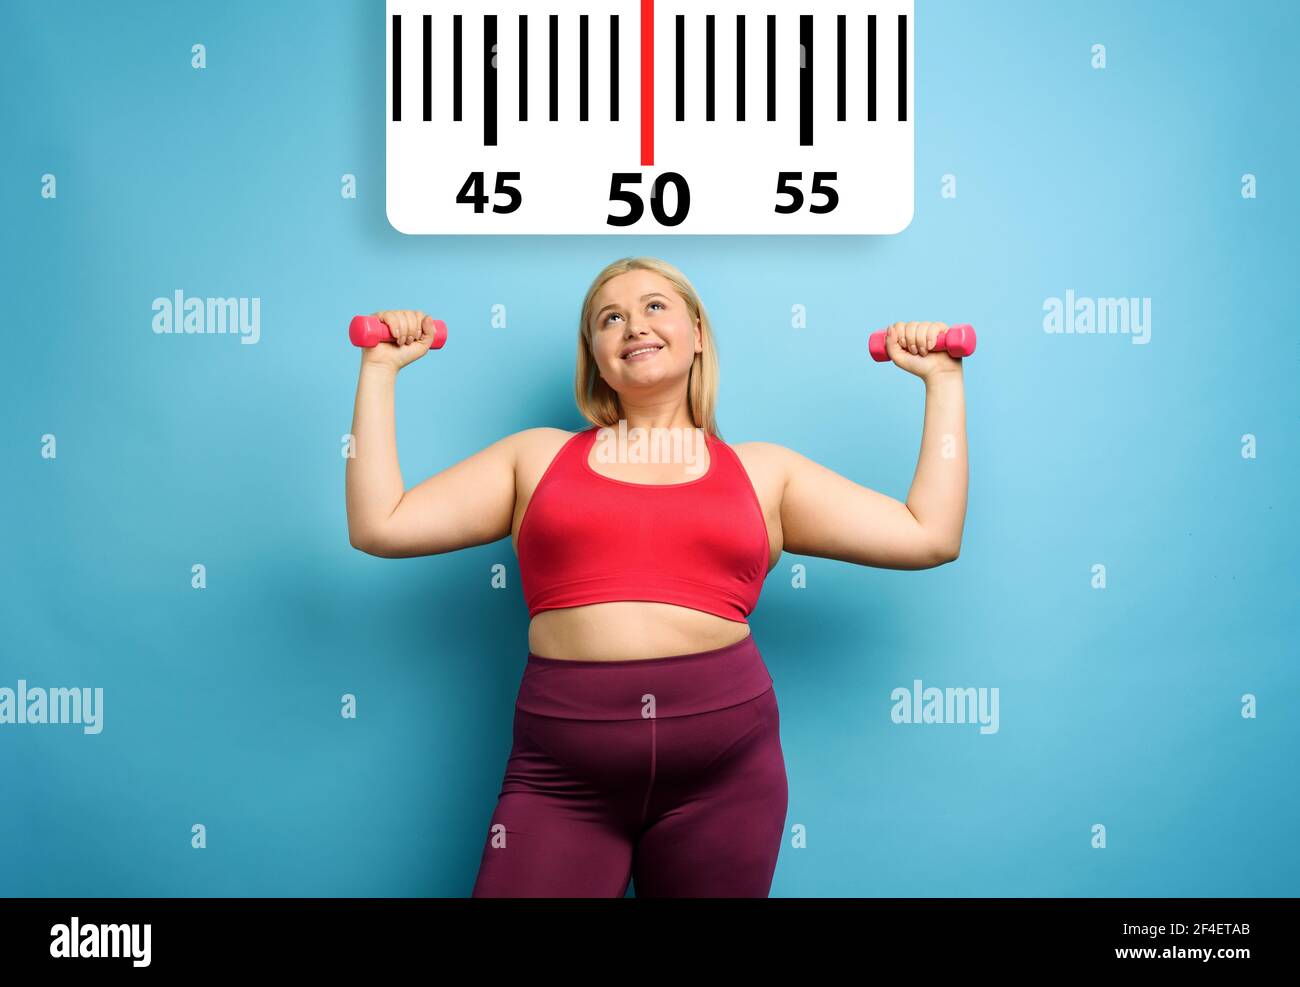 FAT Girl fait de la gym à la maison avec une expression satisfaite parce qu'elle diminue son poids. Fond cyan Banque D'Images